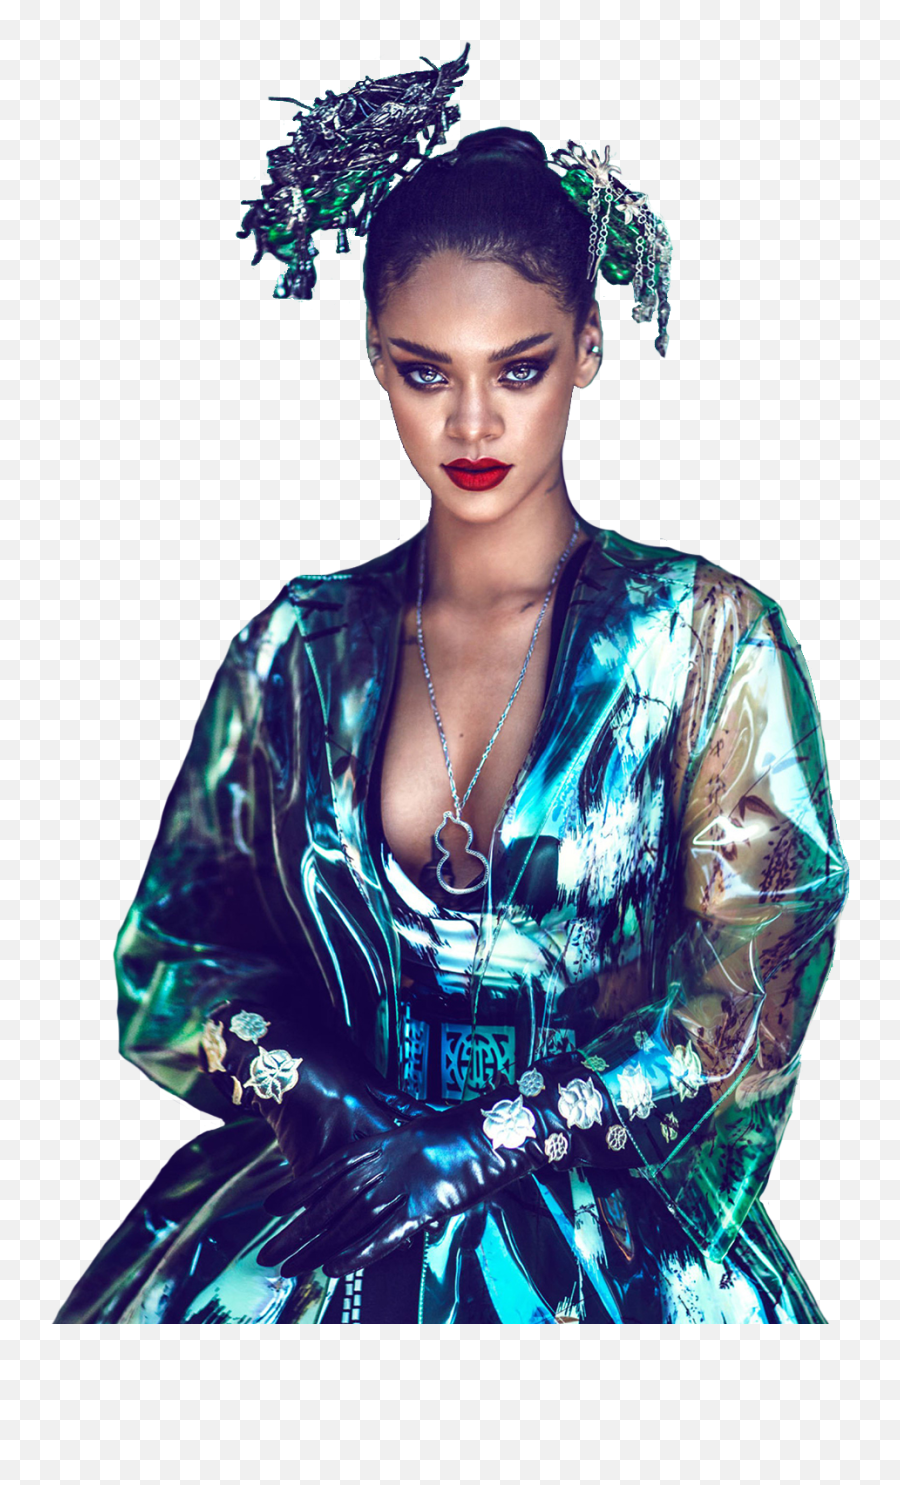 Png Rihanna Transparent Background - Rihanna Transparent Background,Rihanna Transparent Background